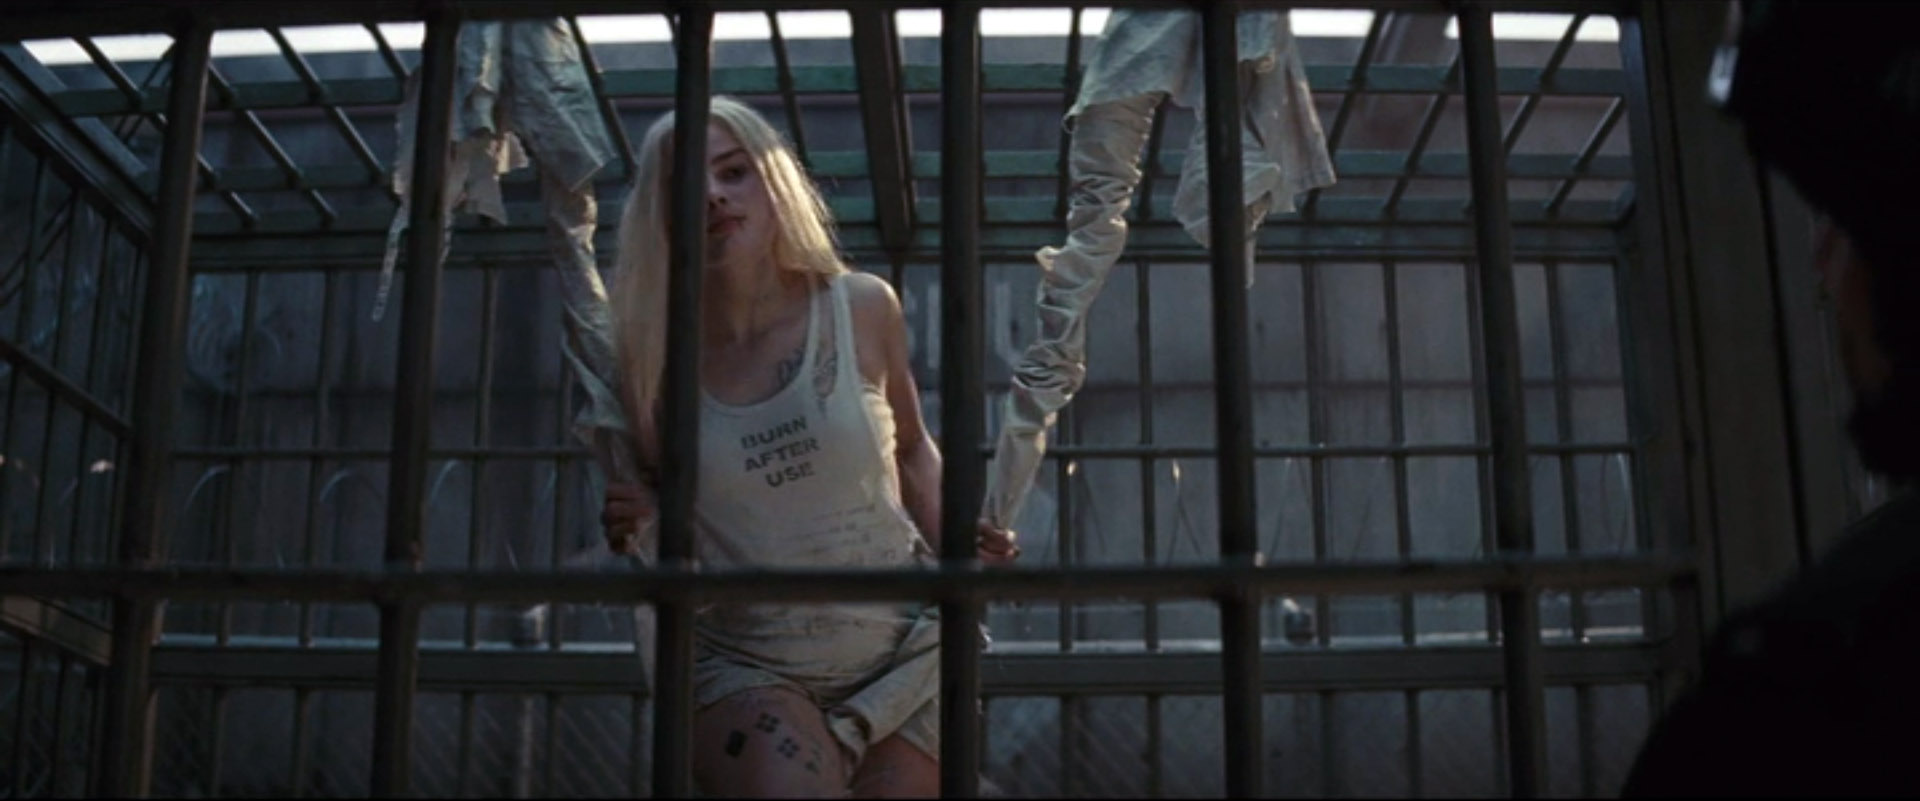 Две блондинки лесбиянки трахаются за решеткой в тюремной камере